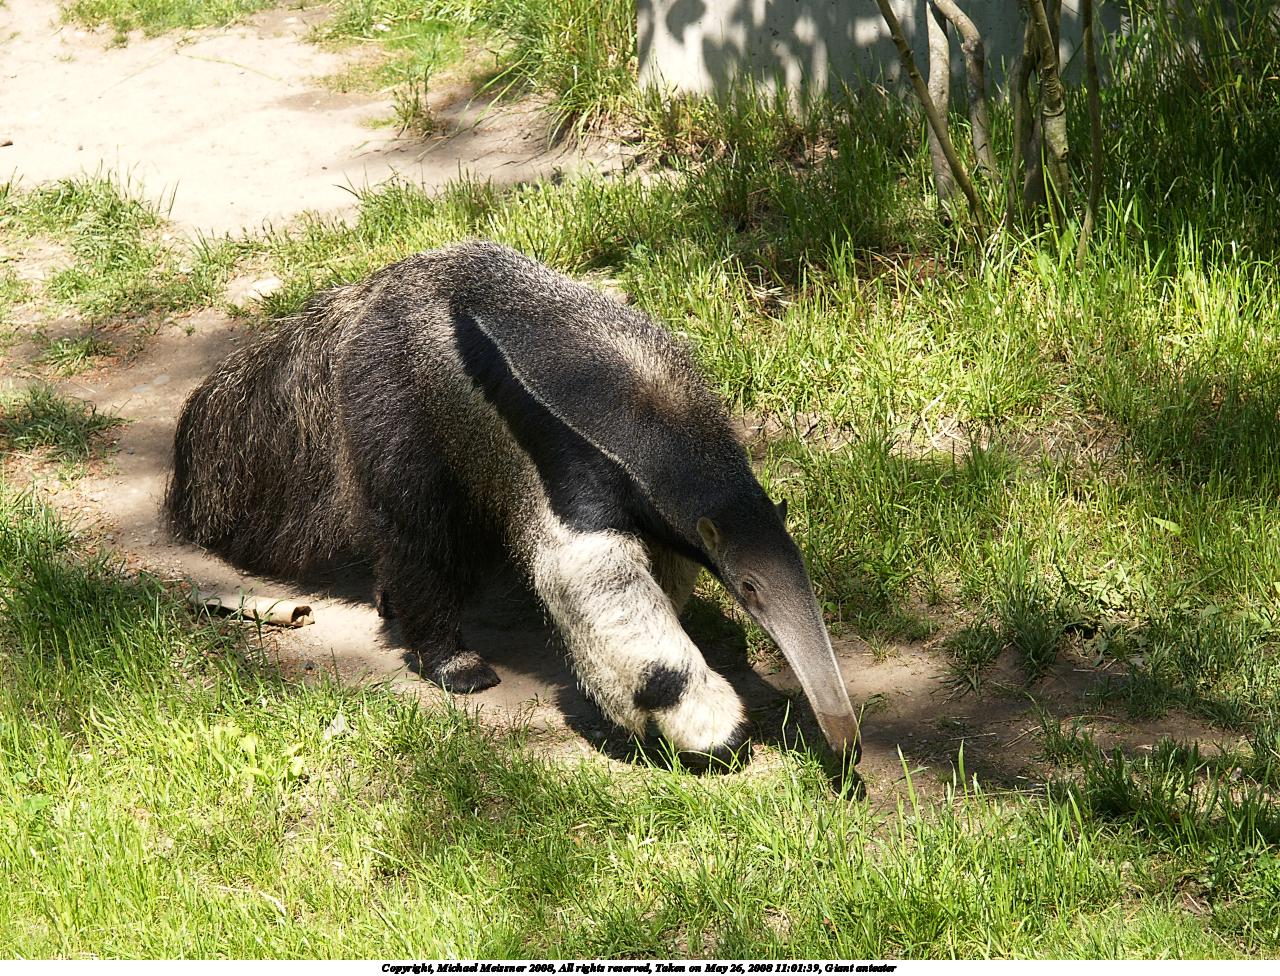 Giant anteater #2